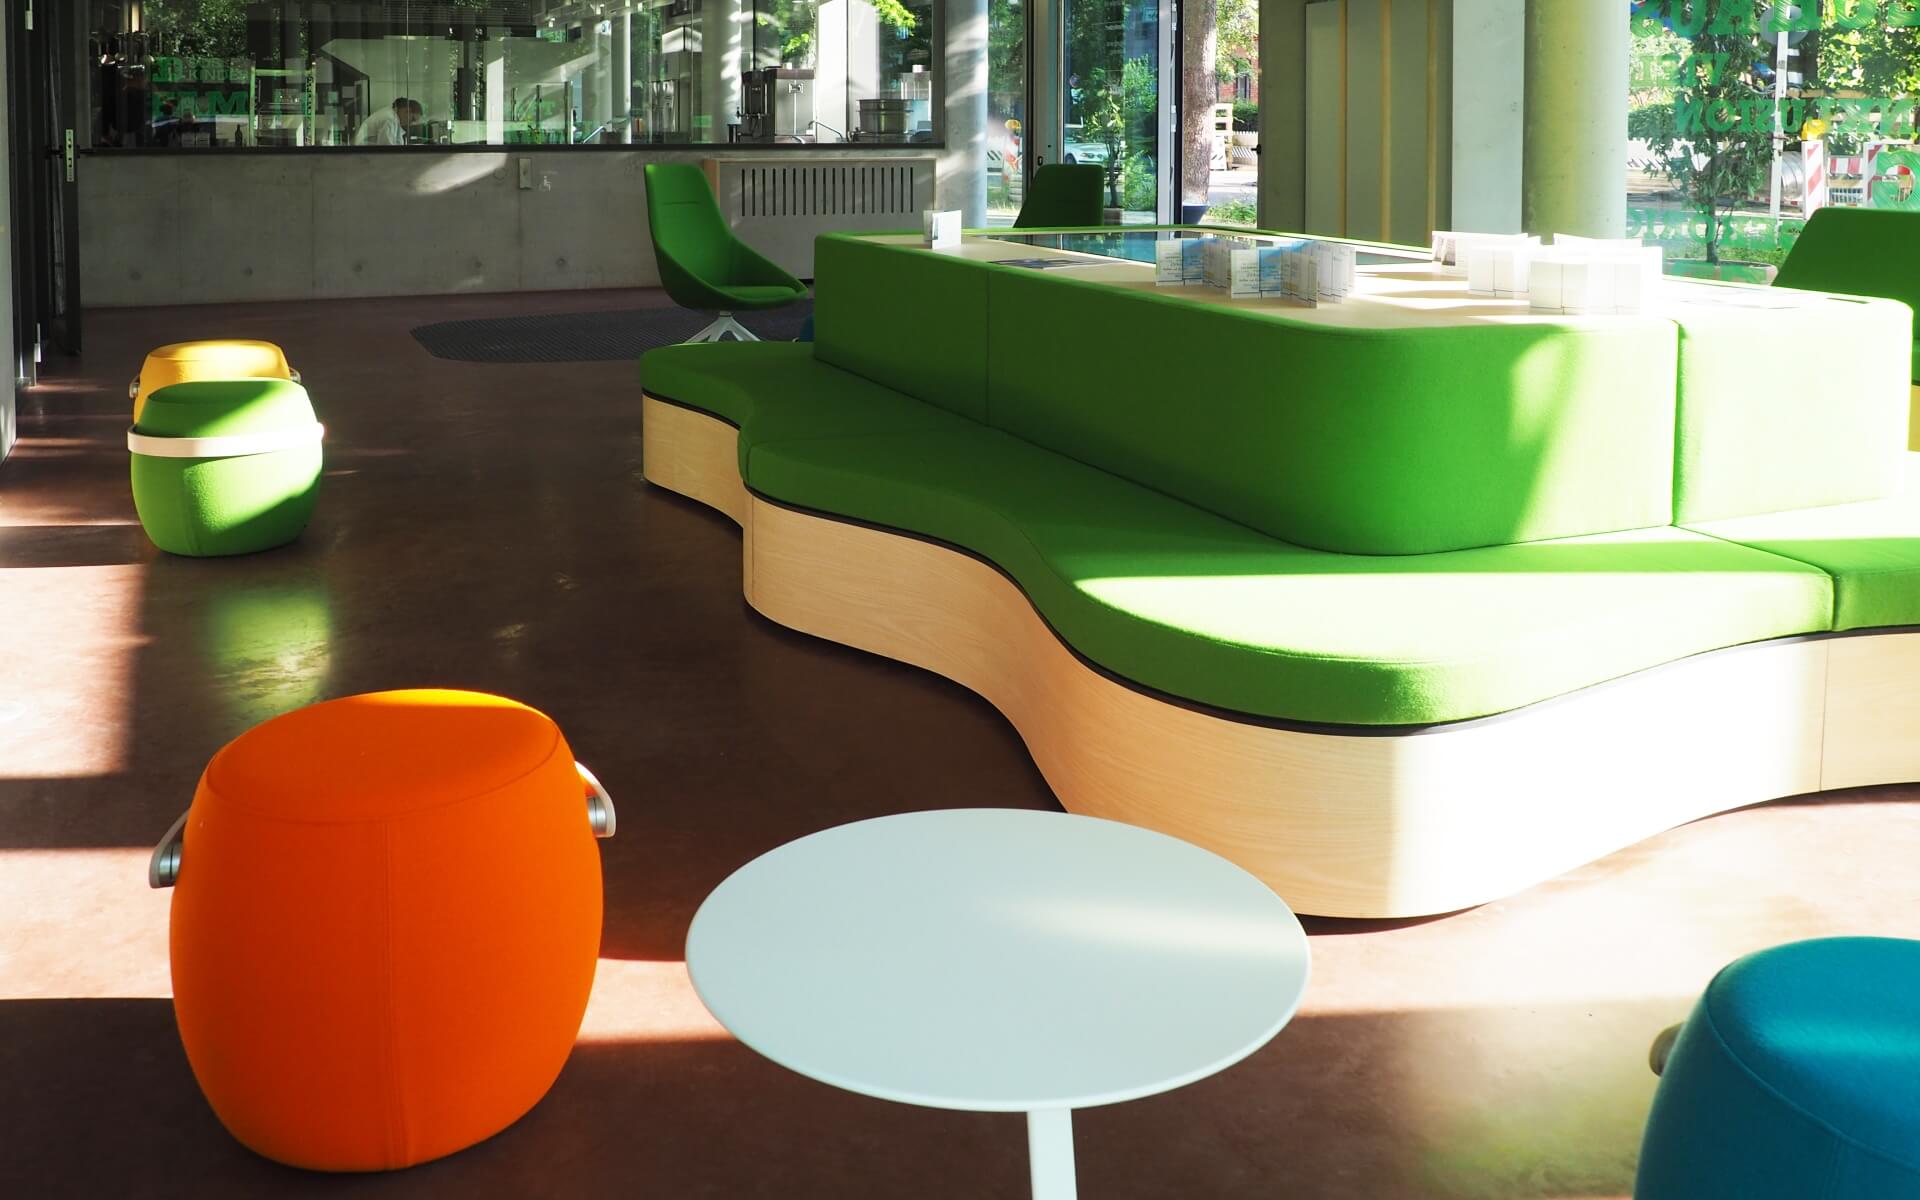 Delafair Inneneinrichtung - farbenfrohe Ladeneinrichtung mit interaktiven Einbauten in maßgefertigte Möbel